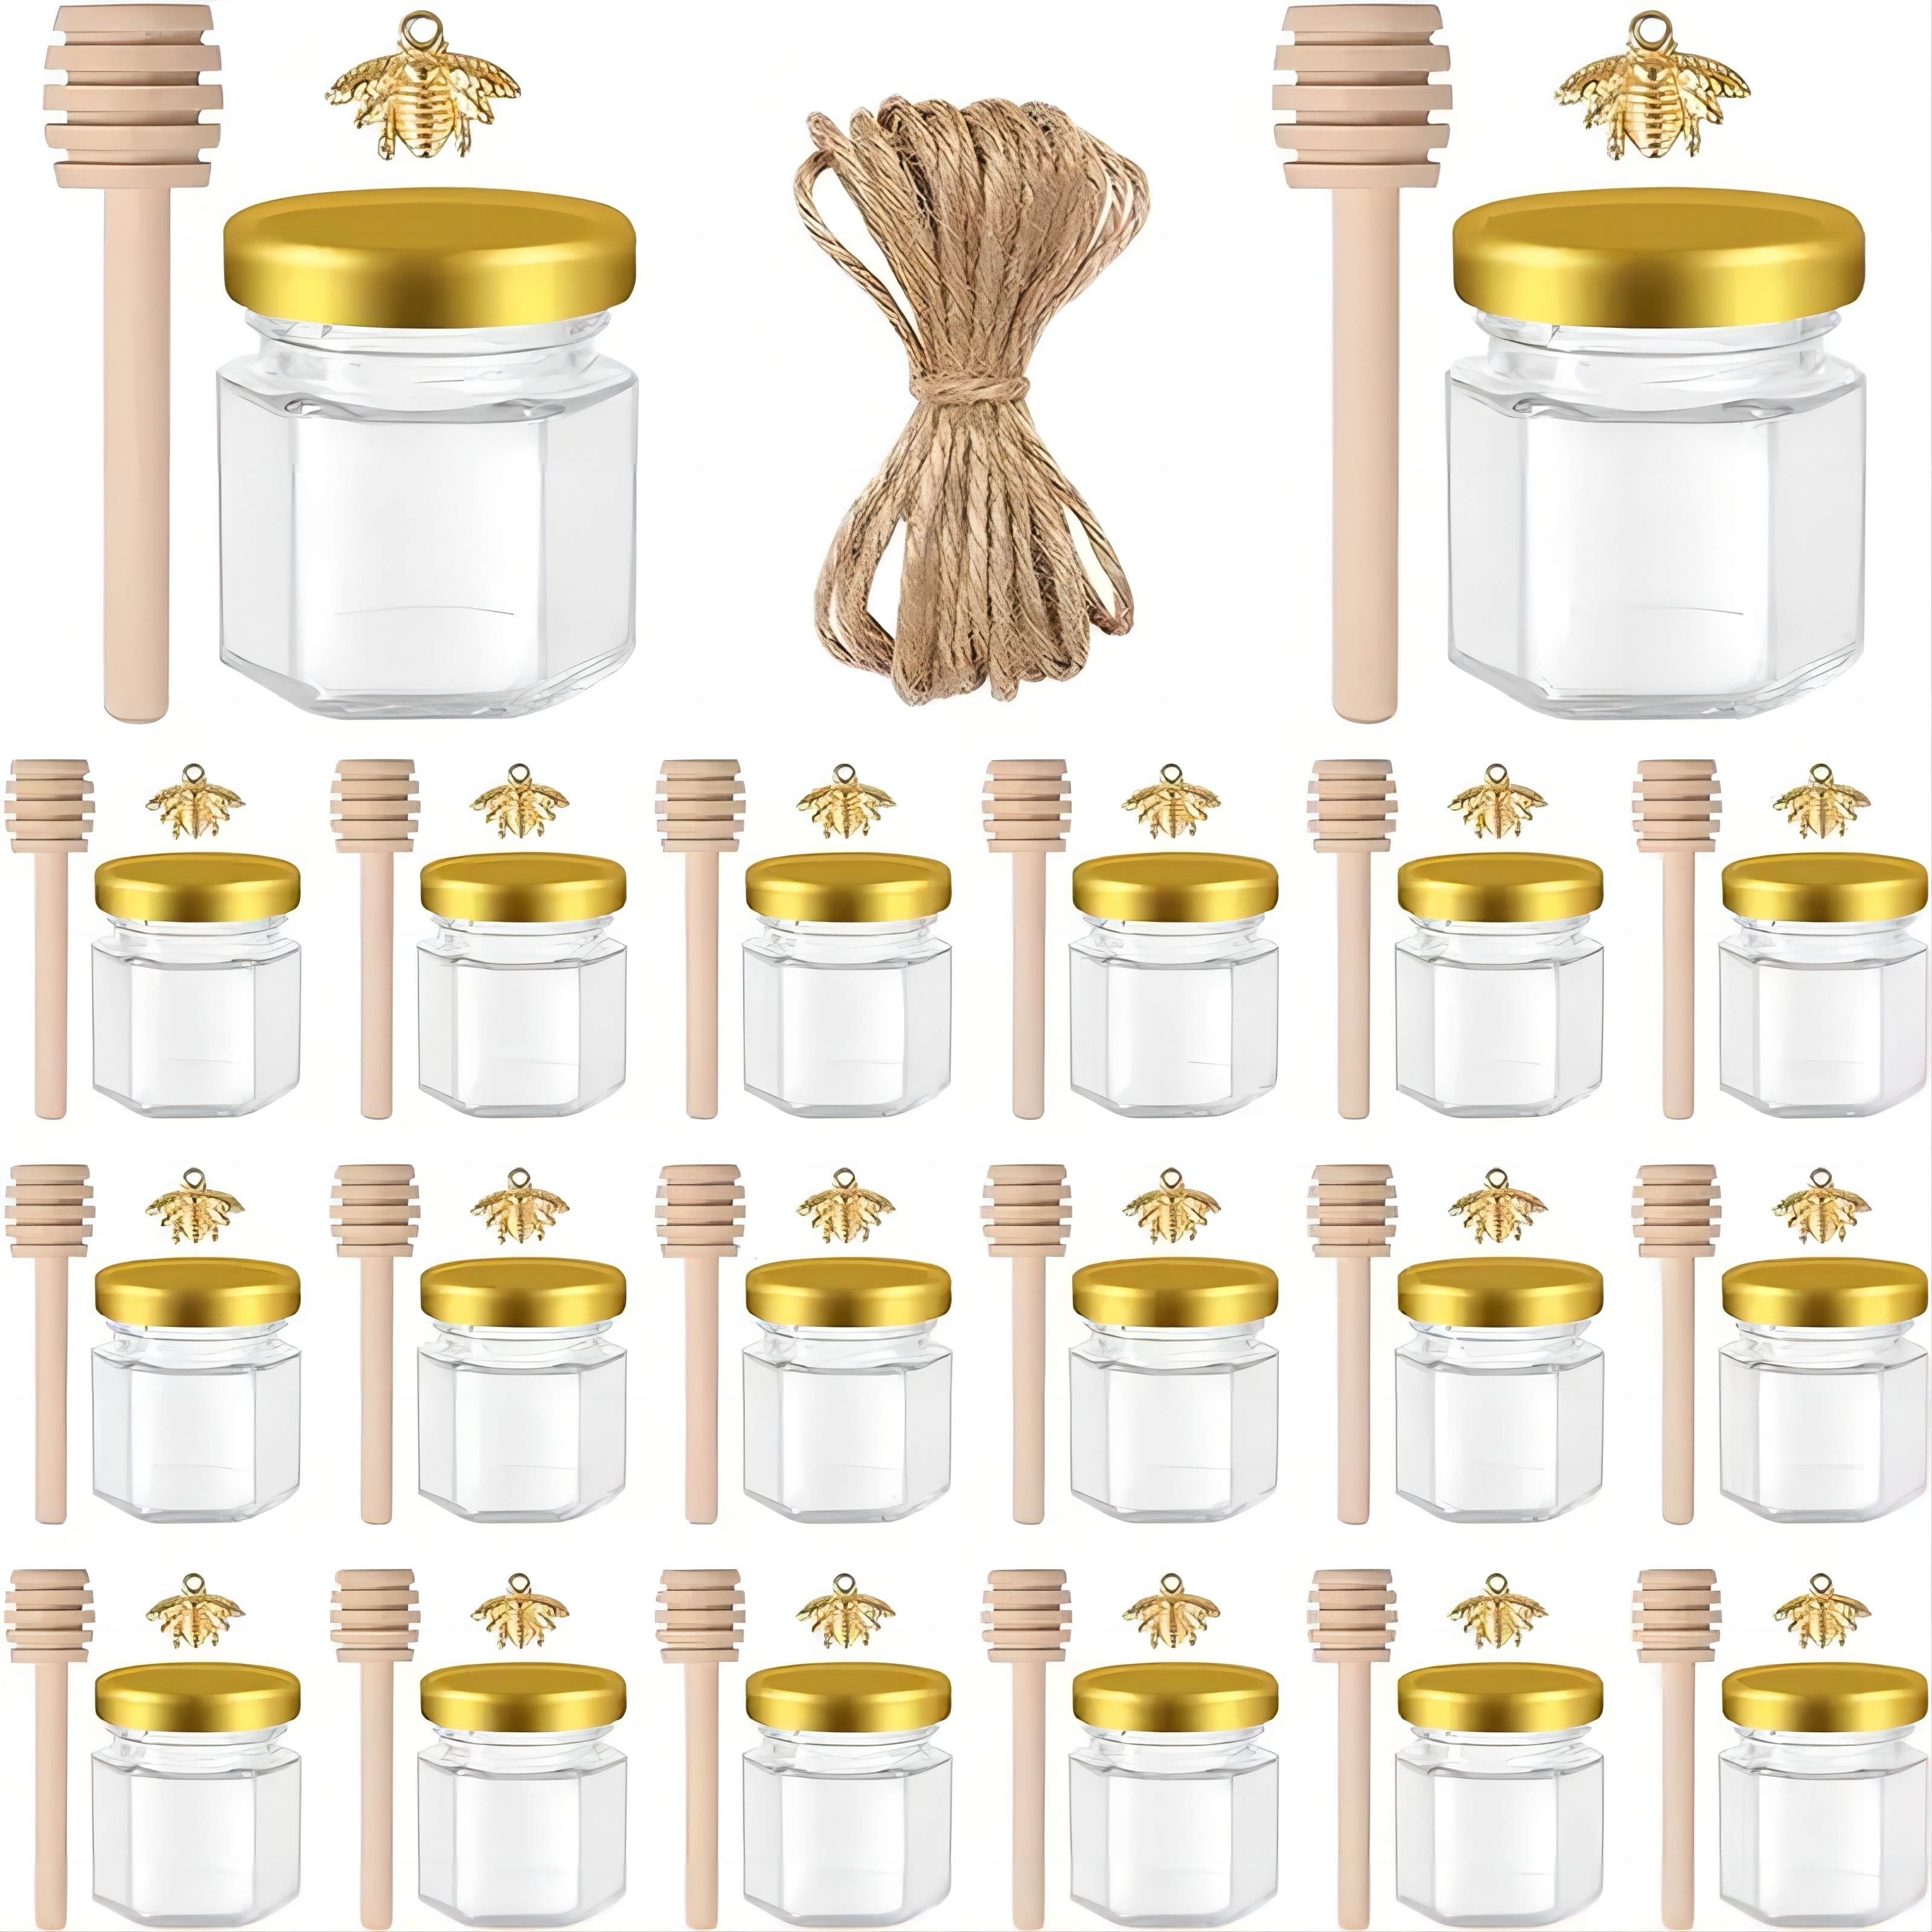 1.7 oz Small Glass Jars with Lids Mini Candy Jars Tiny Mason Jar